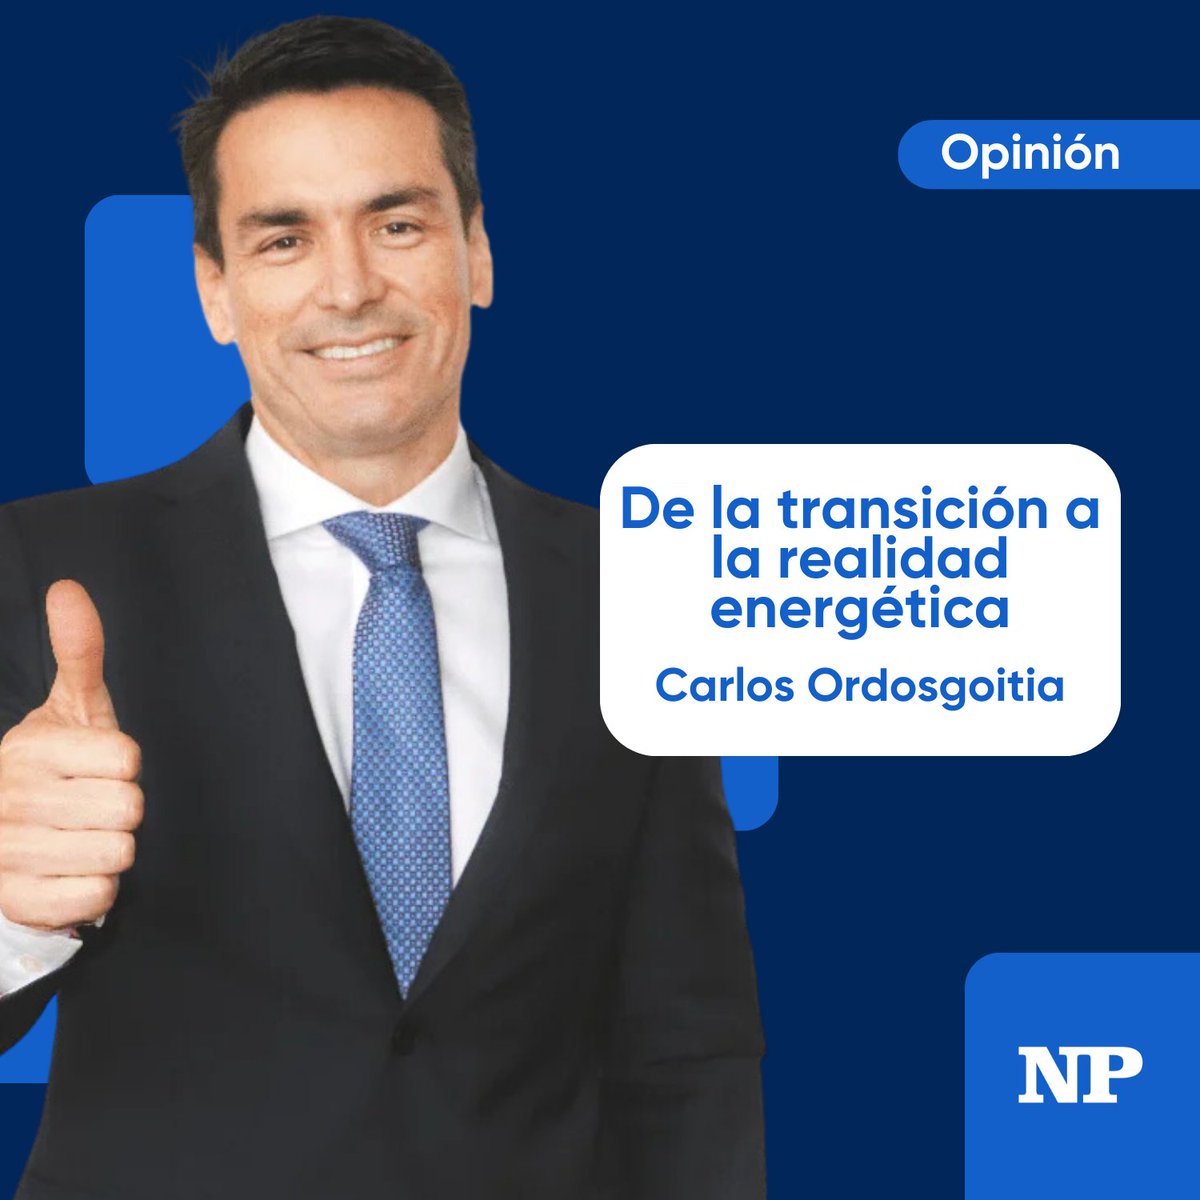 ❗#ColumnadeOpinion❗

Lee la Columna de Opinión de Carlos Ordosgoitia (@caordosgoitia) en el siguiente link ⛓️👇🏼

facebook.com/photo/?fbid=80…